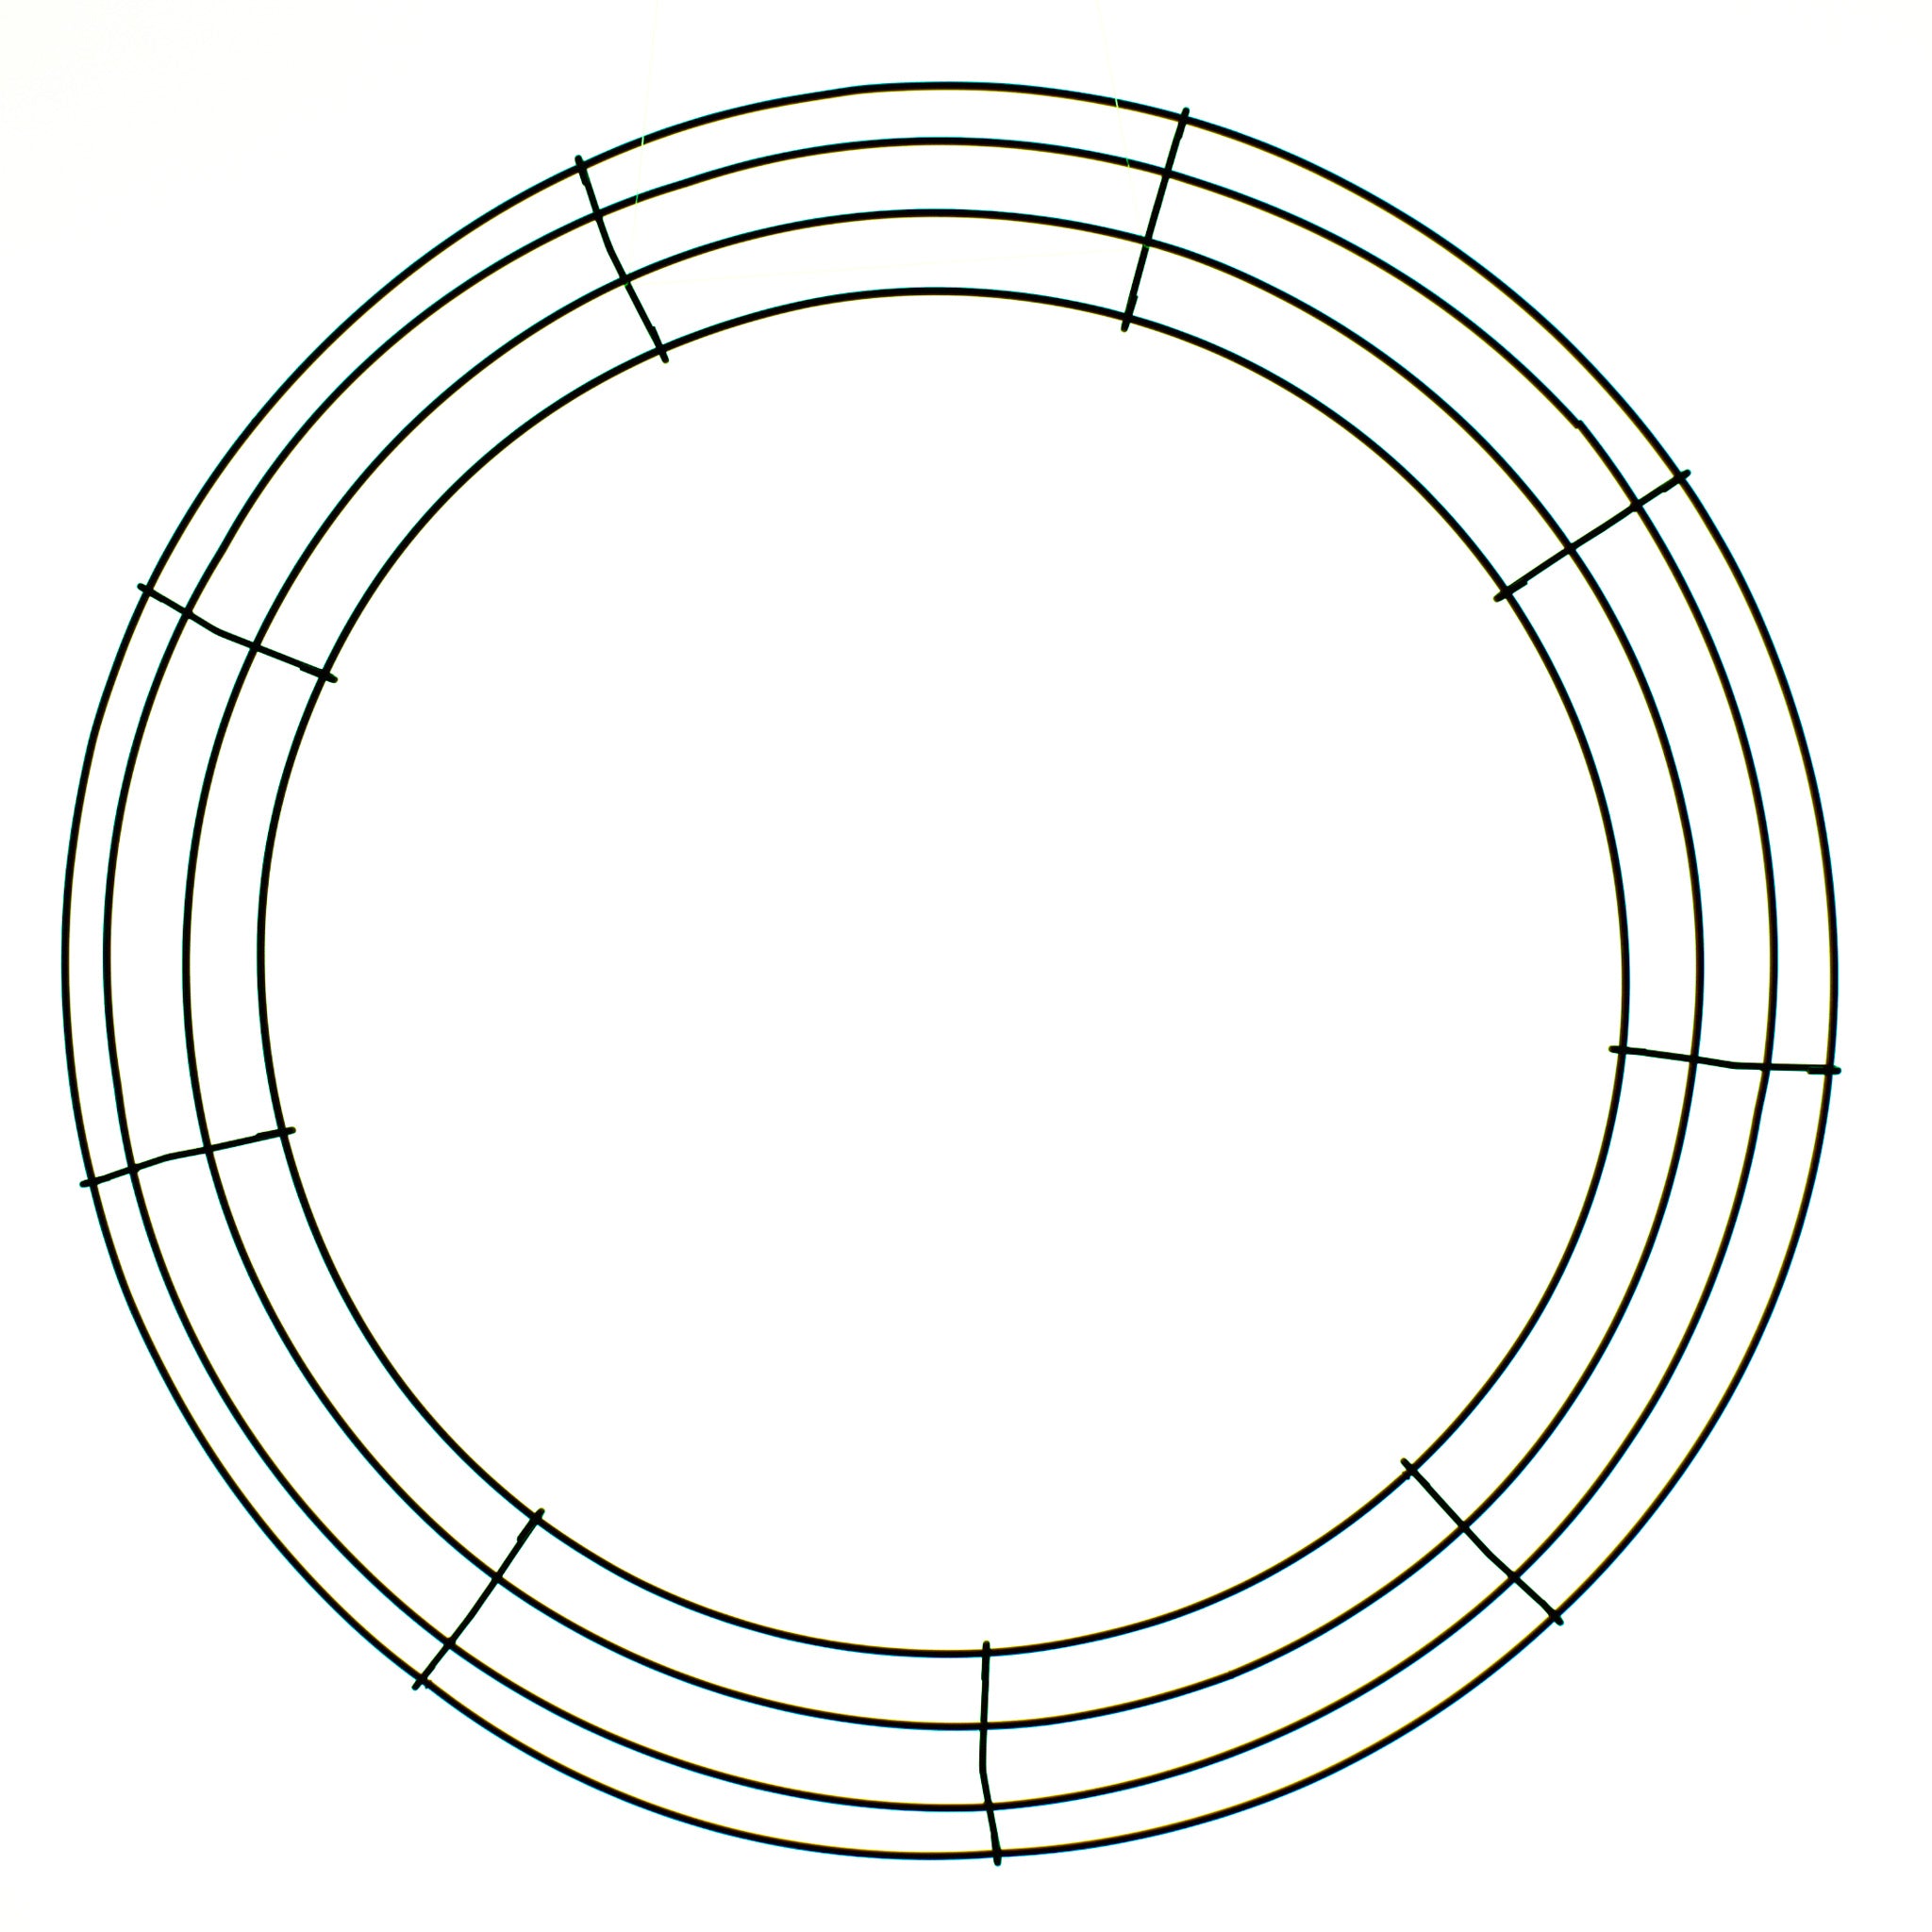 Round Metal Wire Wreath Frame